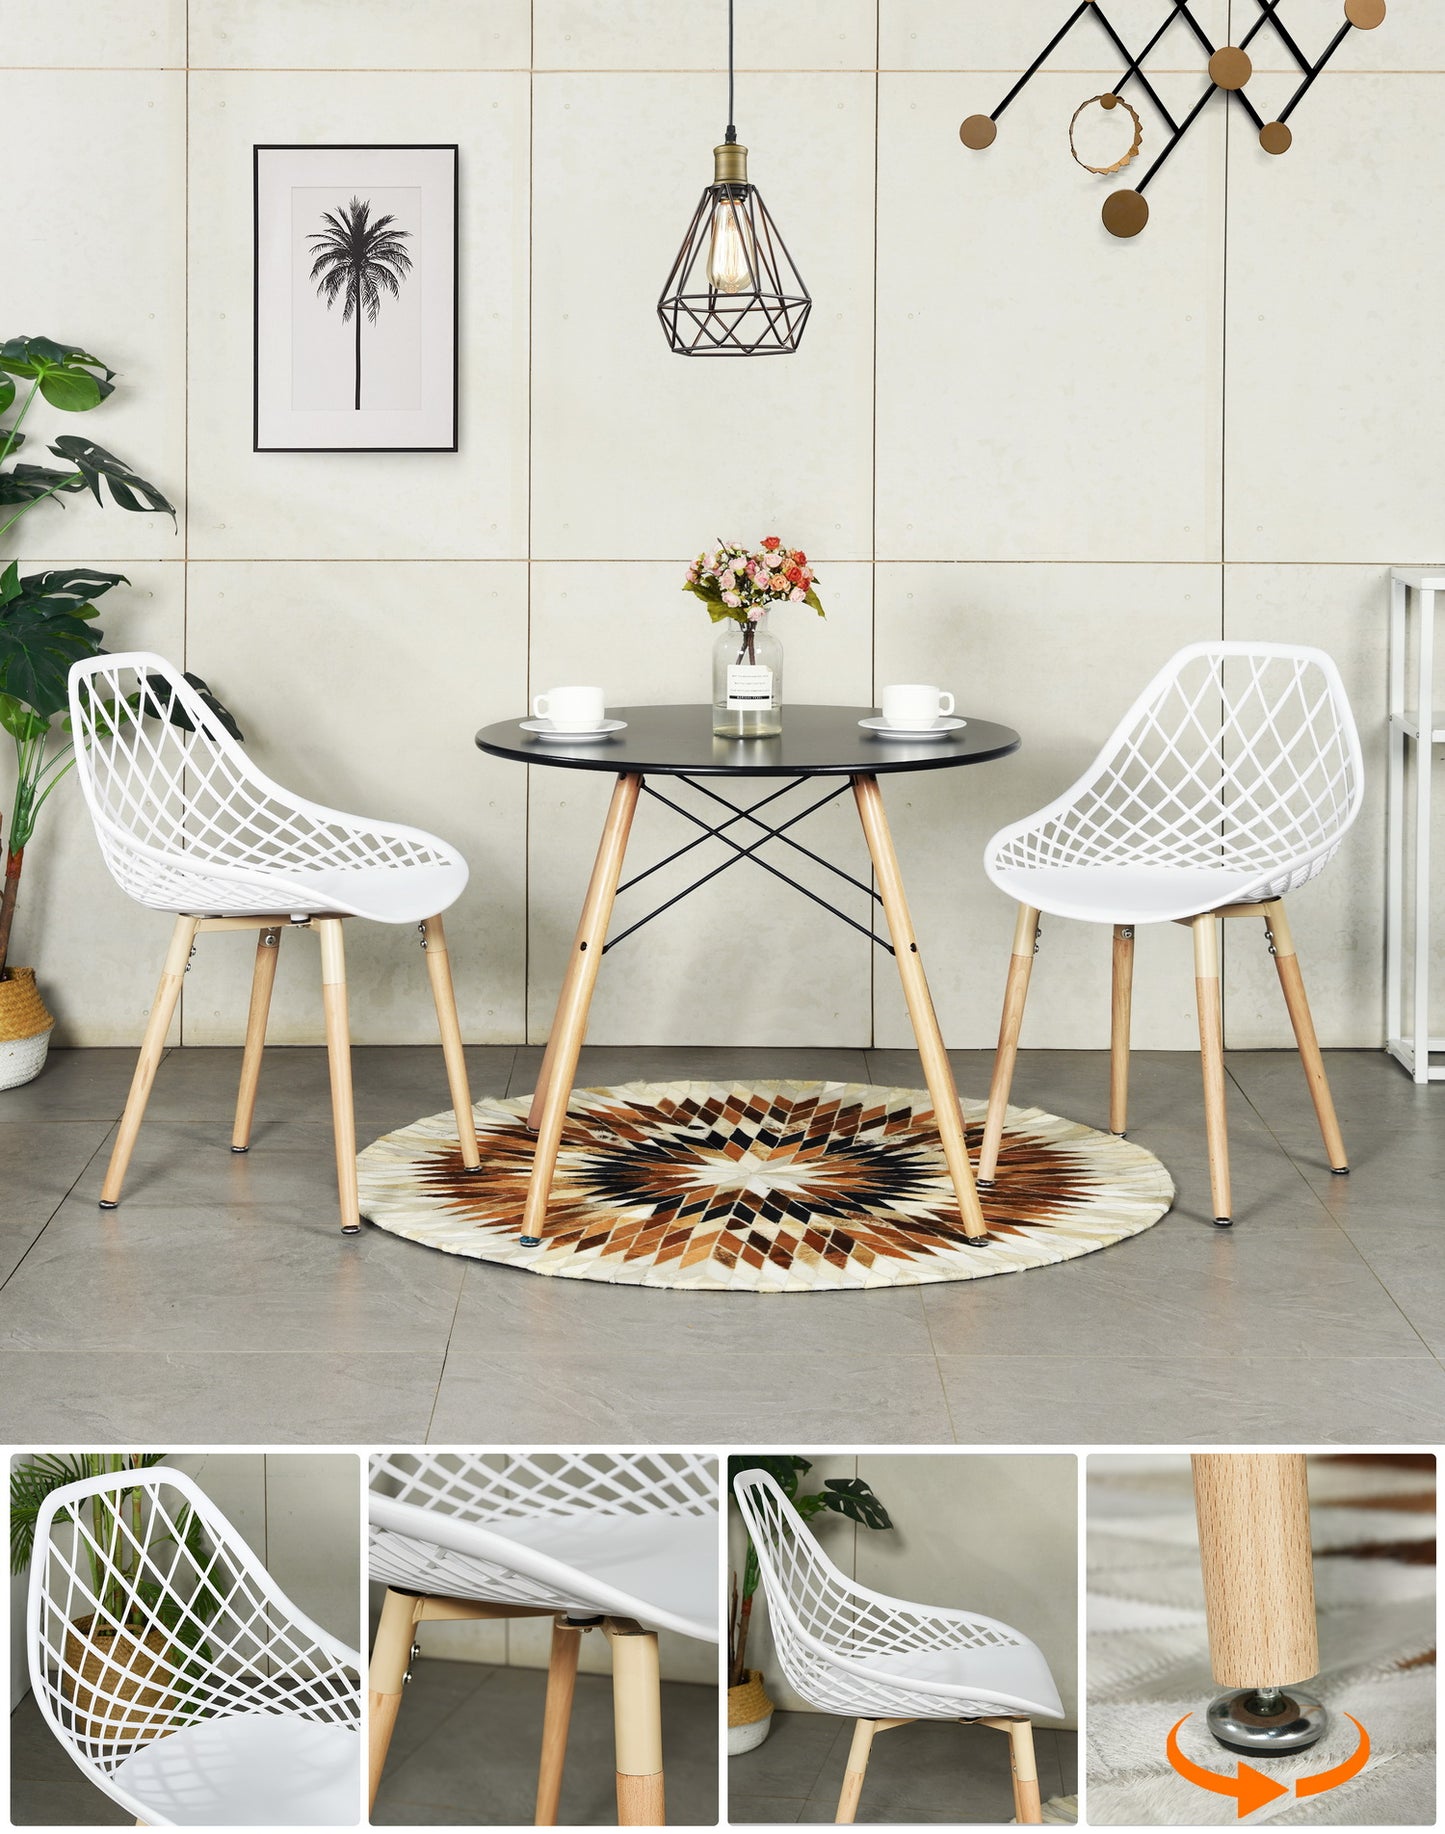 Lot de 2 chaises de salle à manger en plastique blanc avec un design ajouré, pieds en bois, style scandinave.